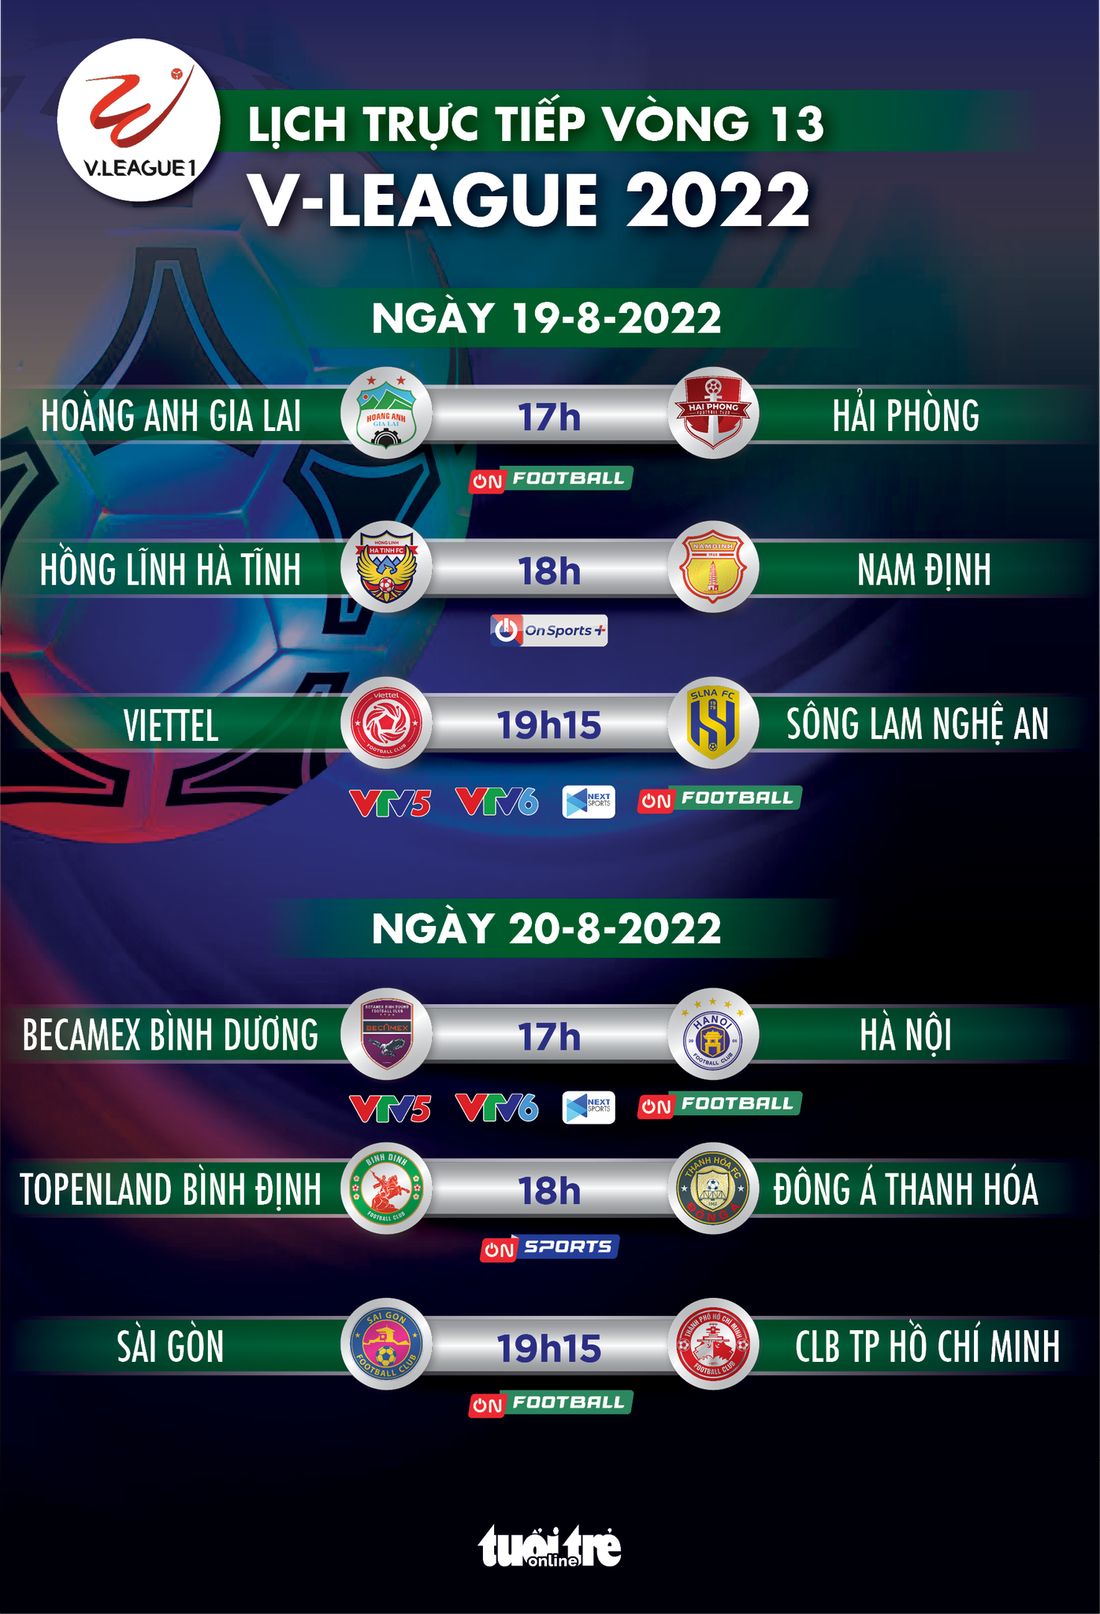 Lịch trực tiếp vòng 13 V-League 2022: HAGL - Hải Phòng, Bình Dương - Hà Nội - Ảnh 1.